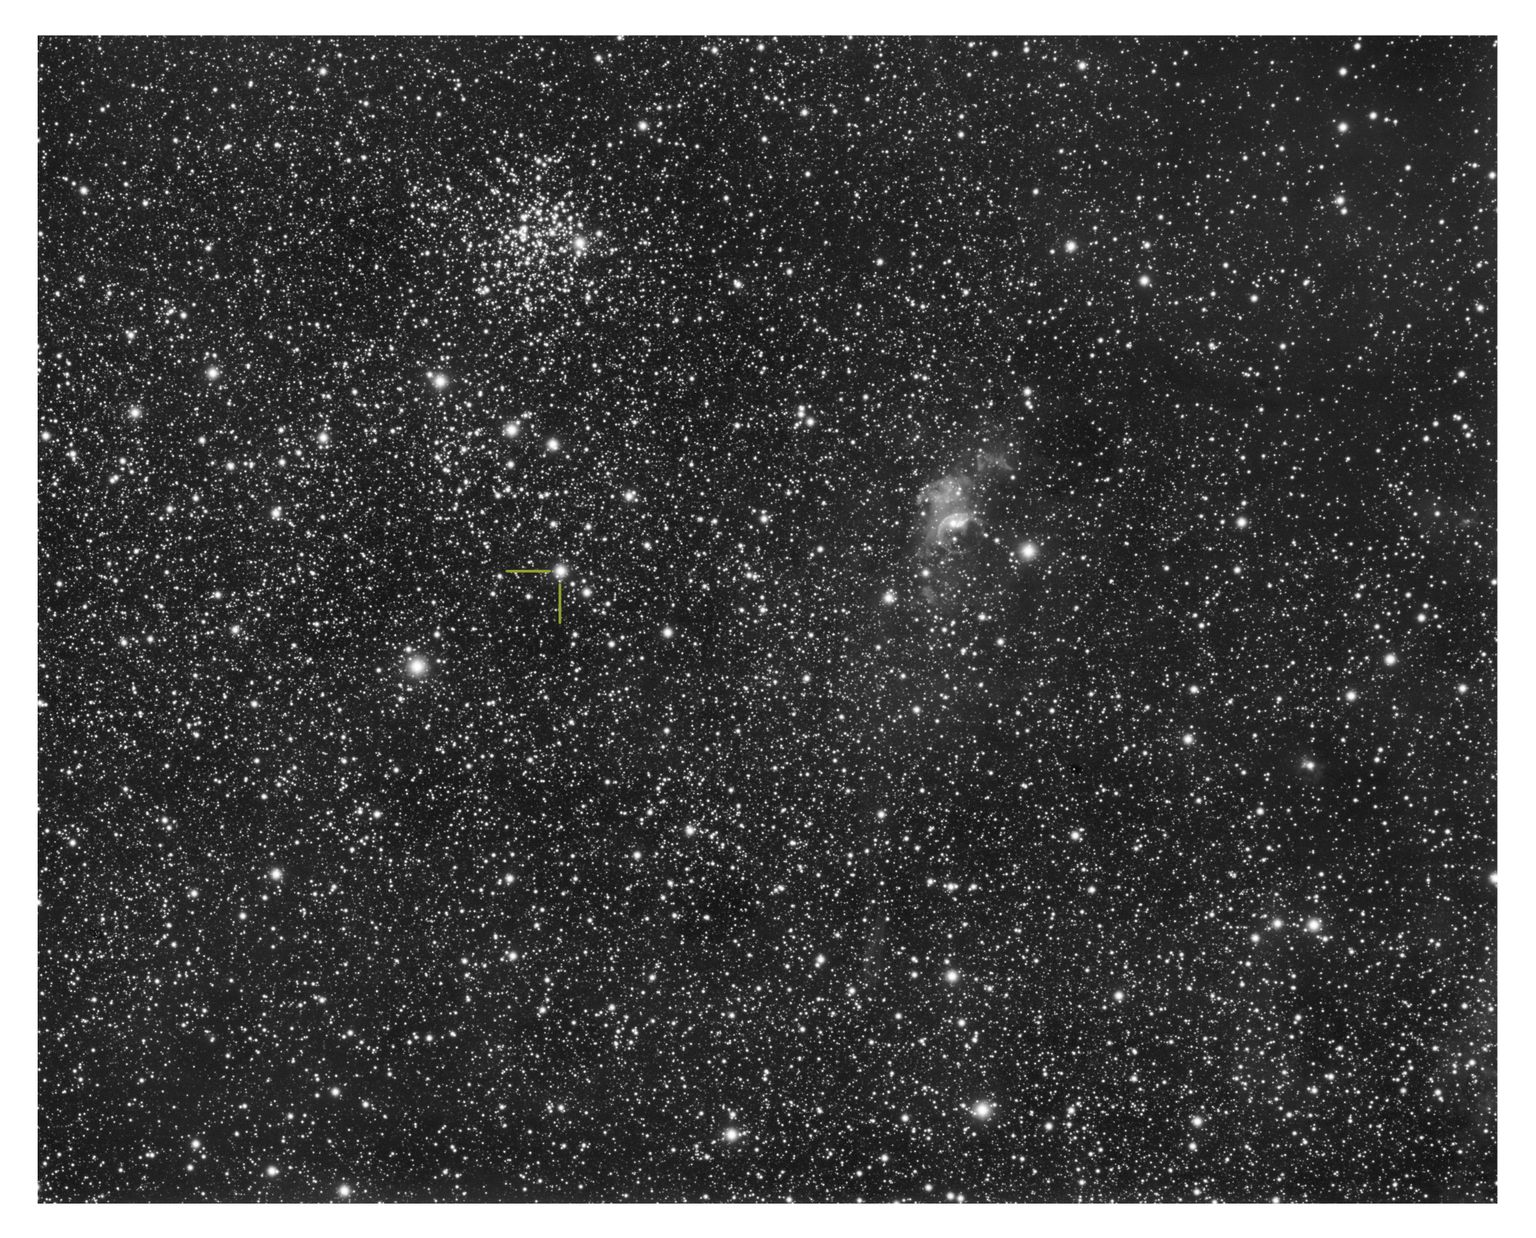 Foto noovast (tähistatud), kus ülal paistab tähist M52 kandev täheparv ja paremal Mulli uduks kutsutud NGC 7635. Foto on tehtud teleskoobiga Skywatcher Esprit 120ed.